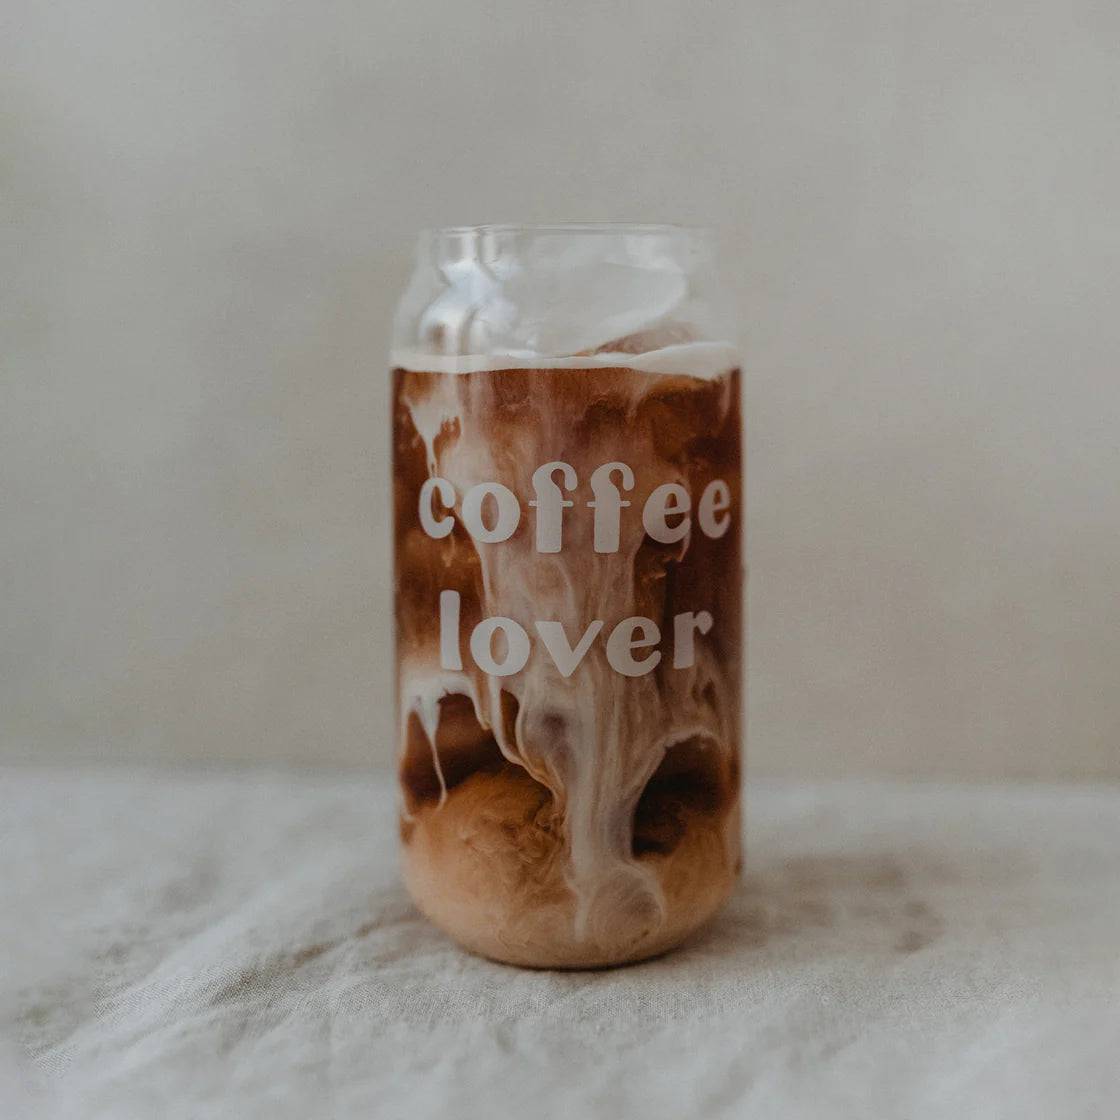 Eulenschnitt hohes Teinkglas, Becher Coffee lover - Der Backmichgluecklich Online Shop